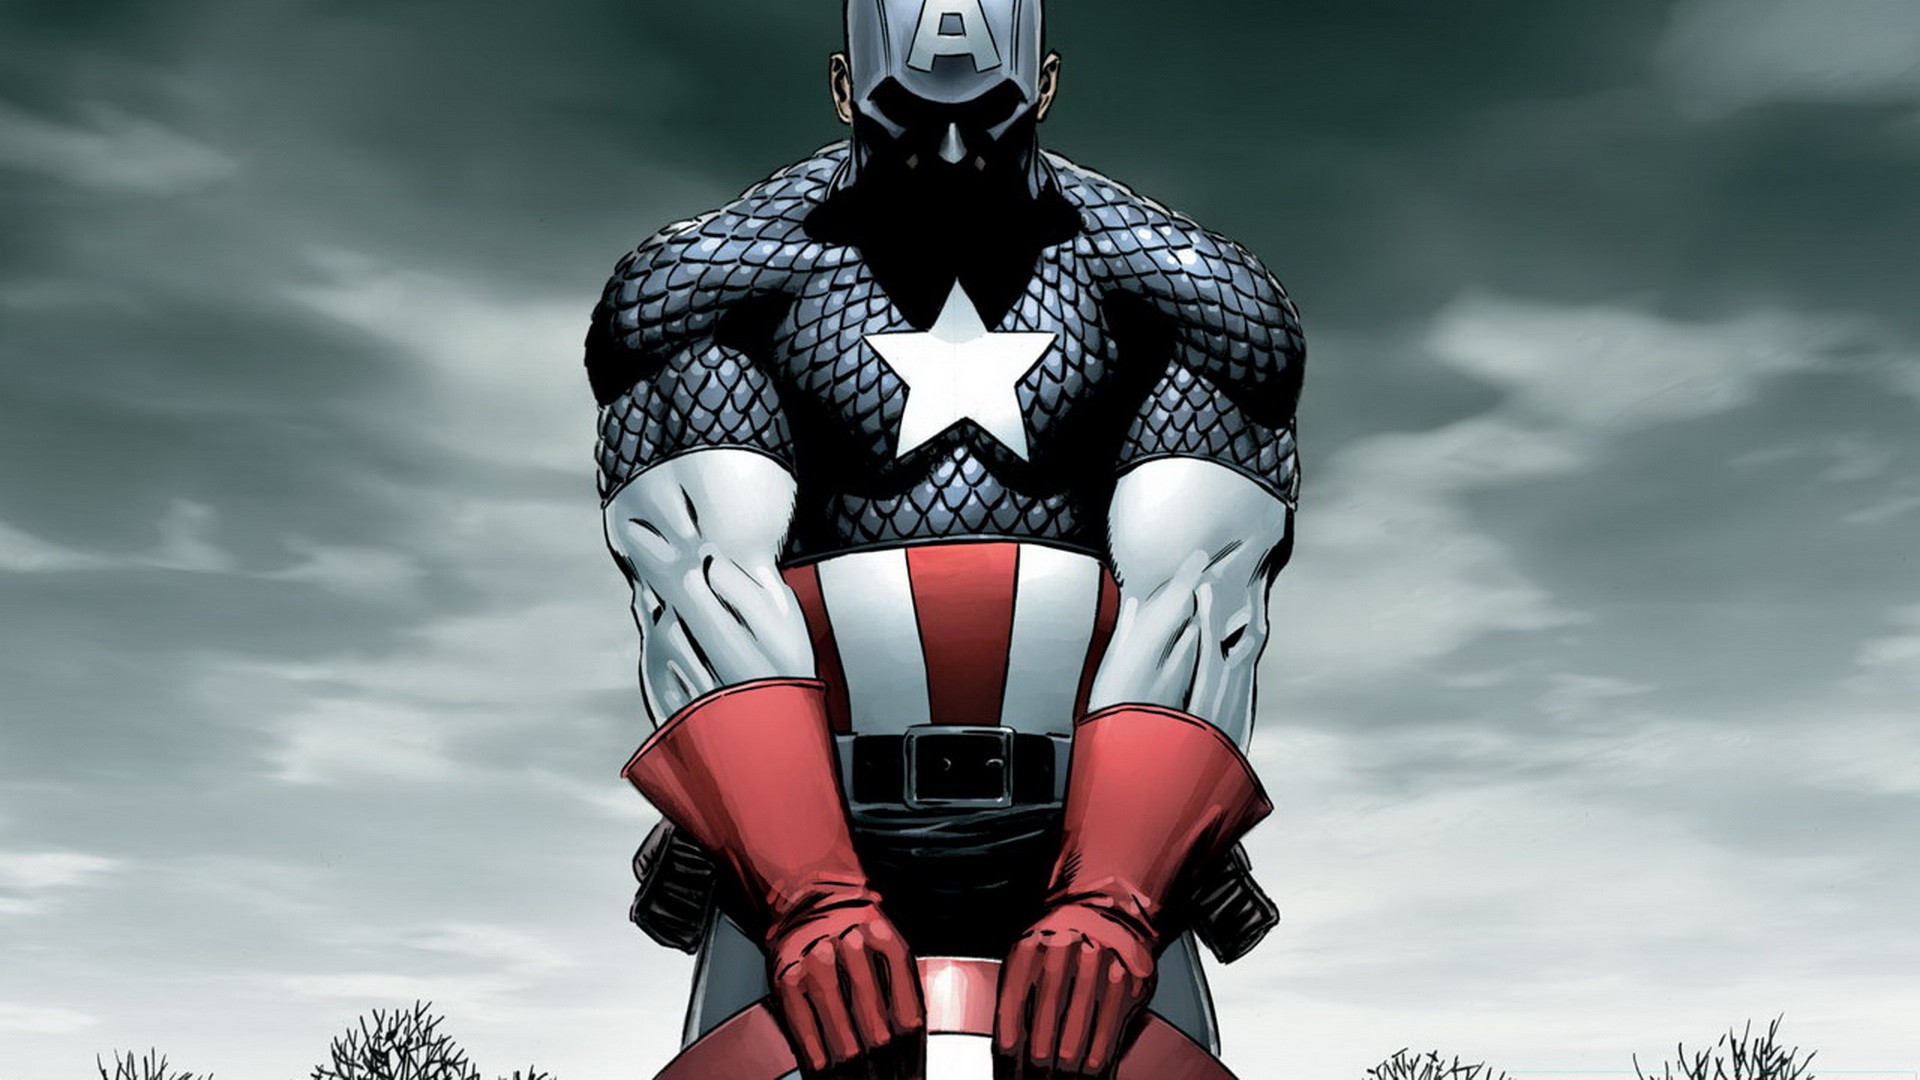 Endgame Captain America Suit in First Avenger